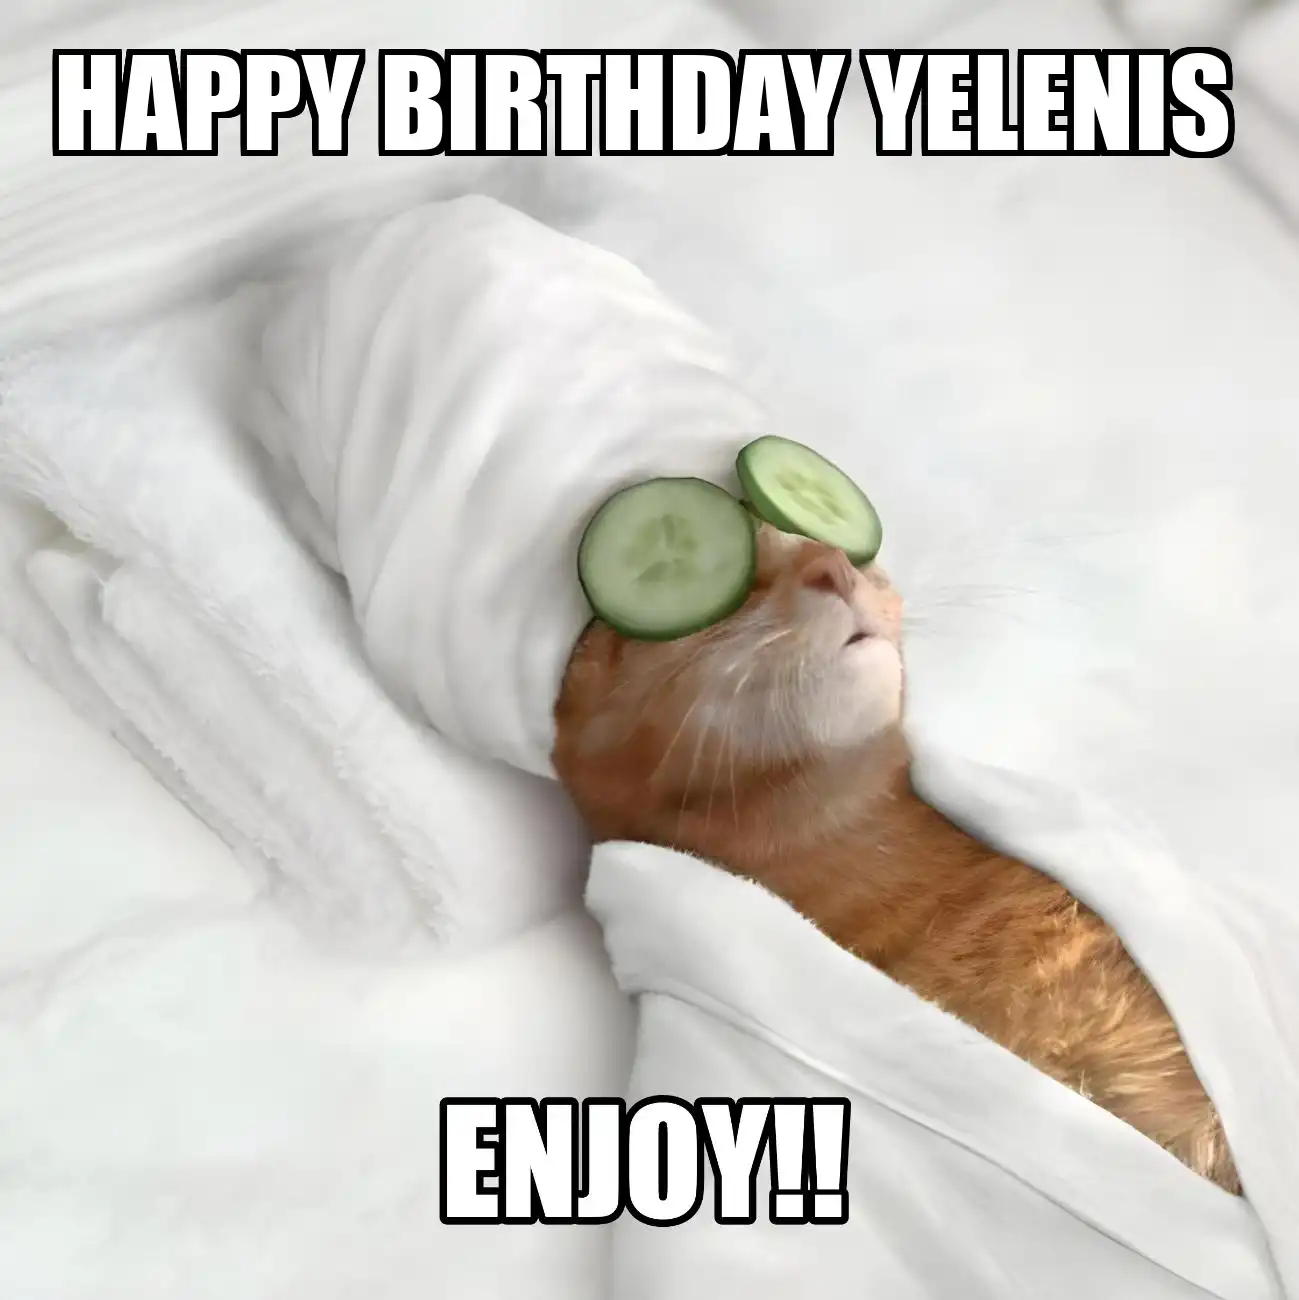 Happy Birthday Yelenis Enjoy Cat Meme